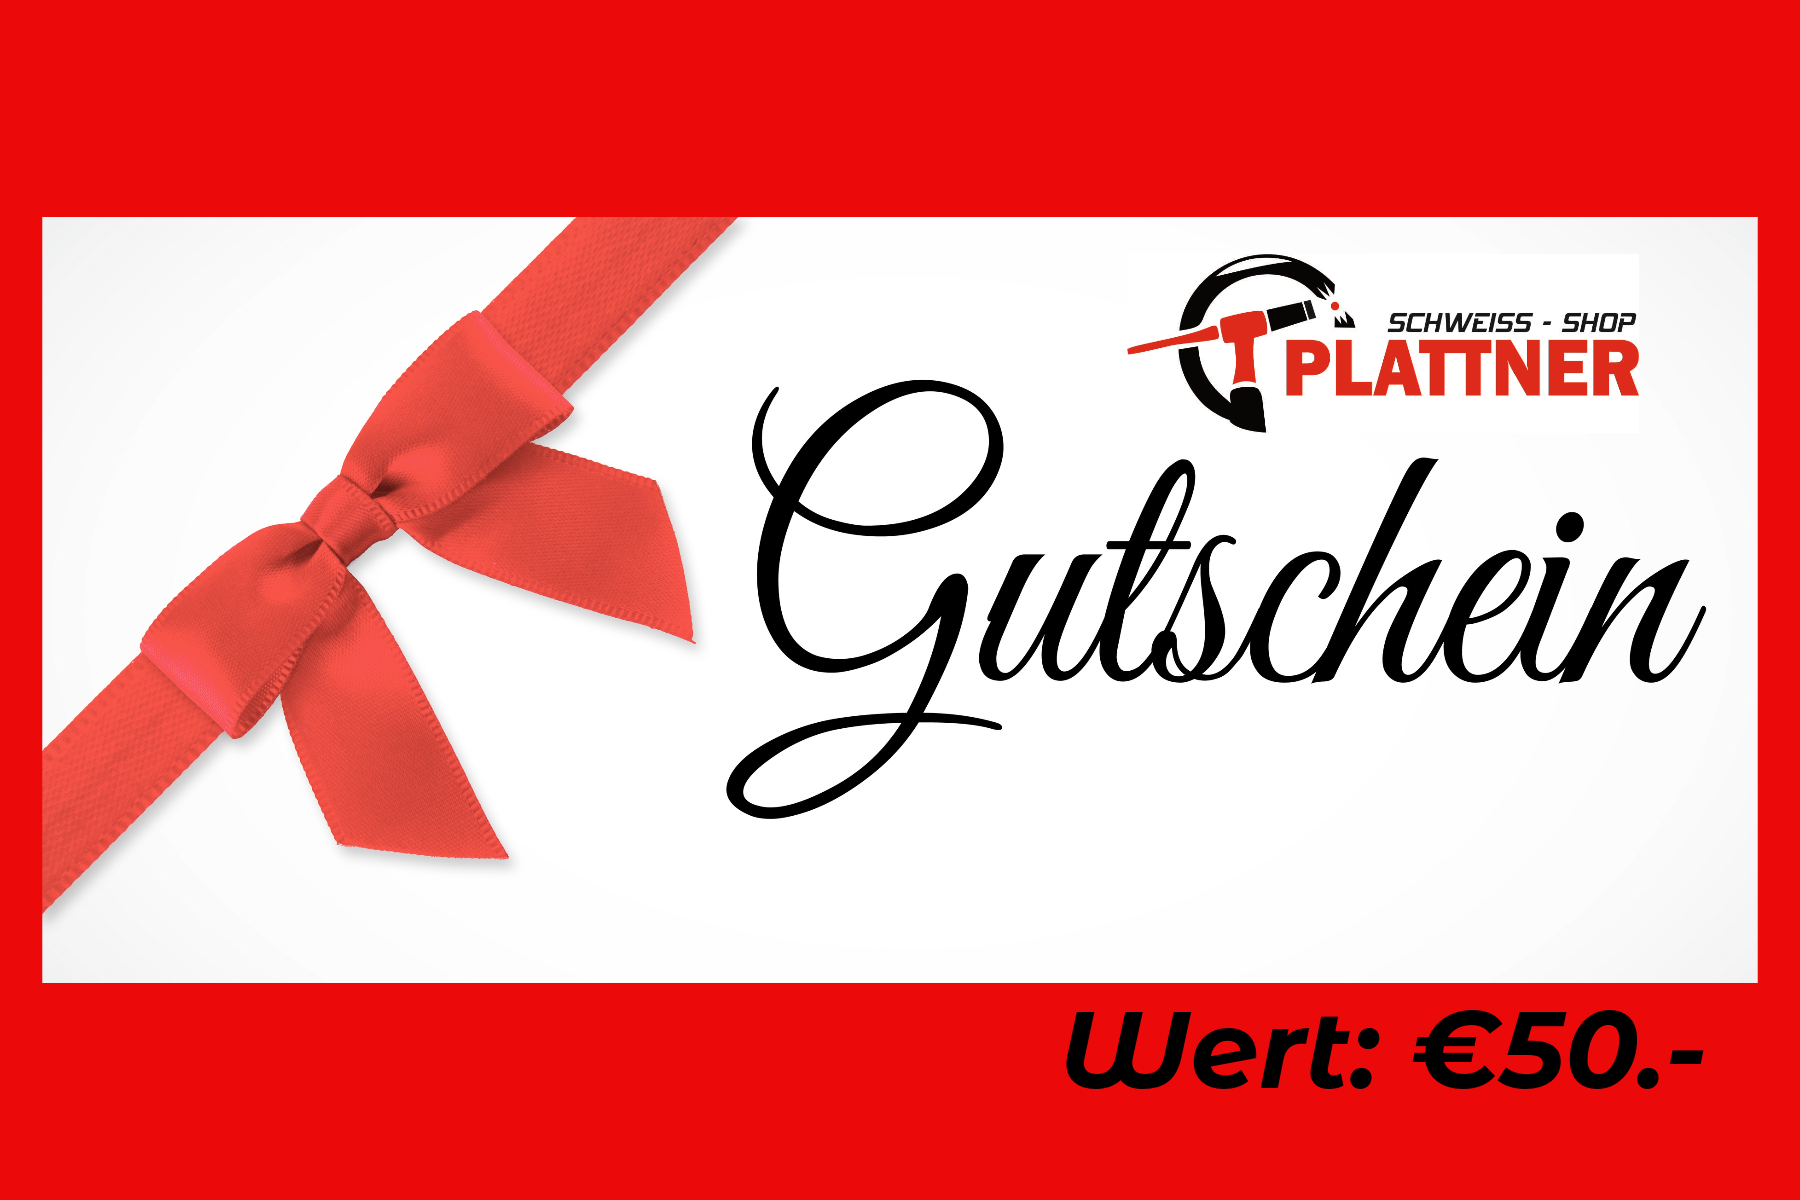 Plattners Schweiss Shop Geschenkgutschein